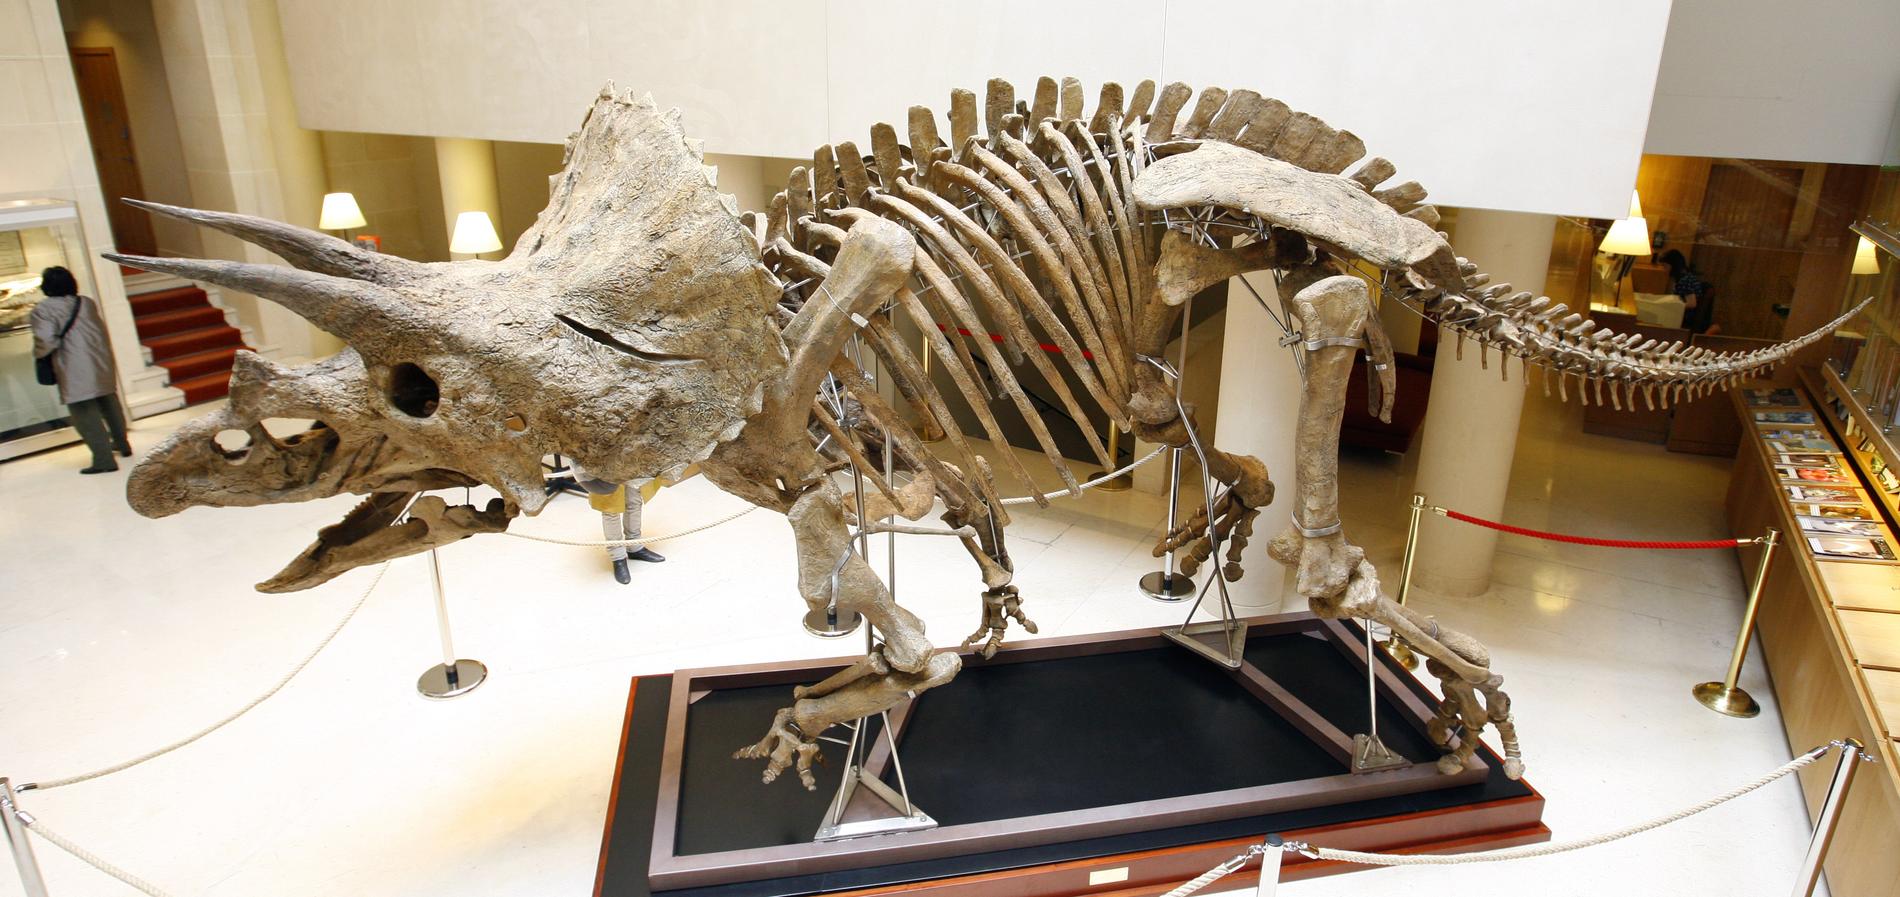 En triceratops från släktet ceratopsier vars ben tros ha hittats i Skåne